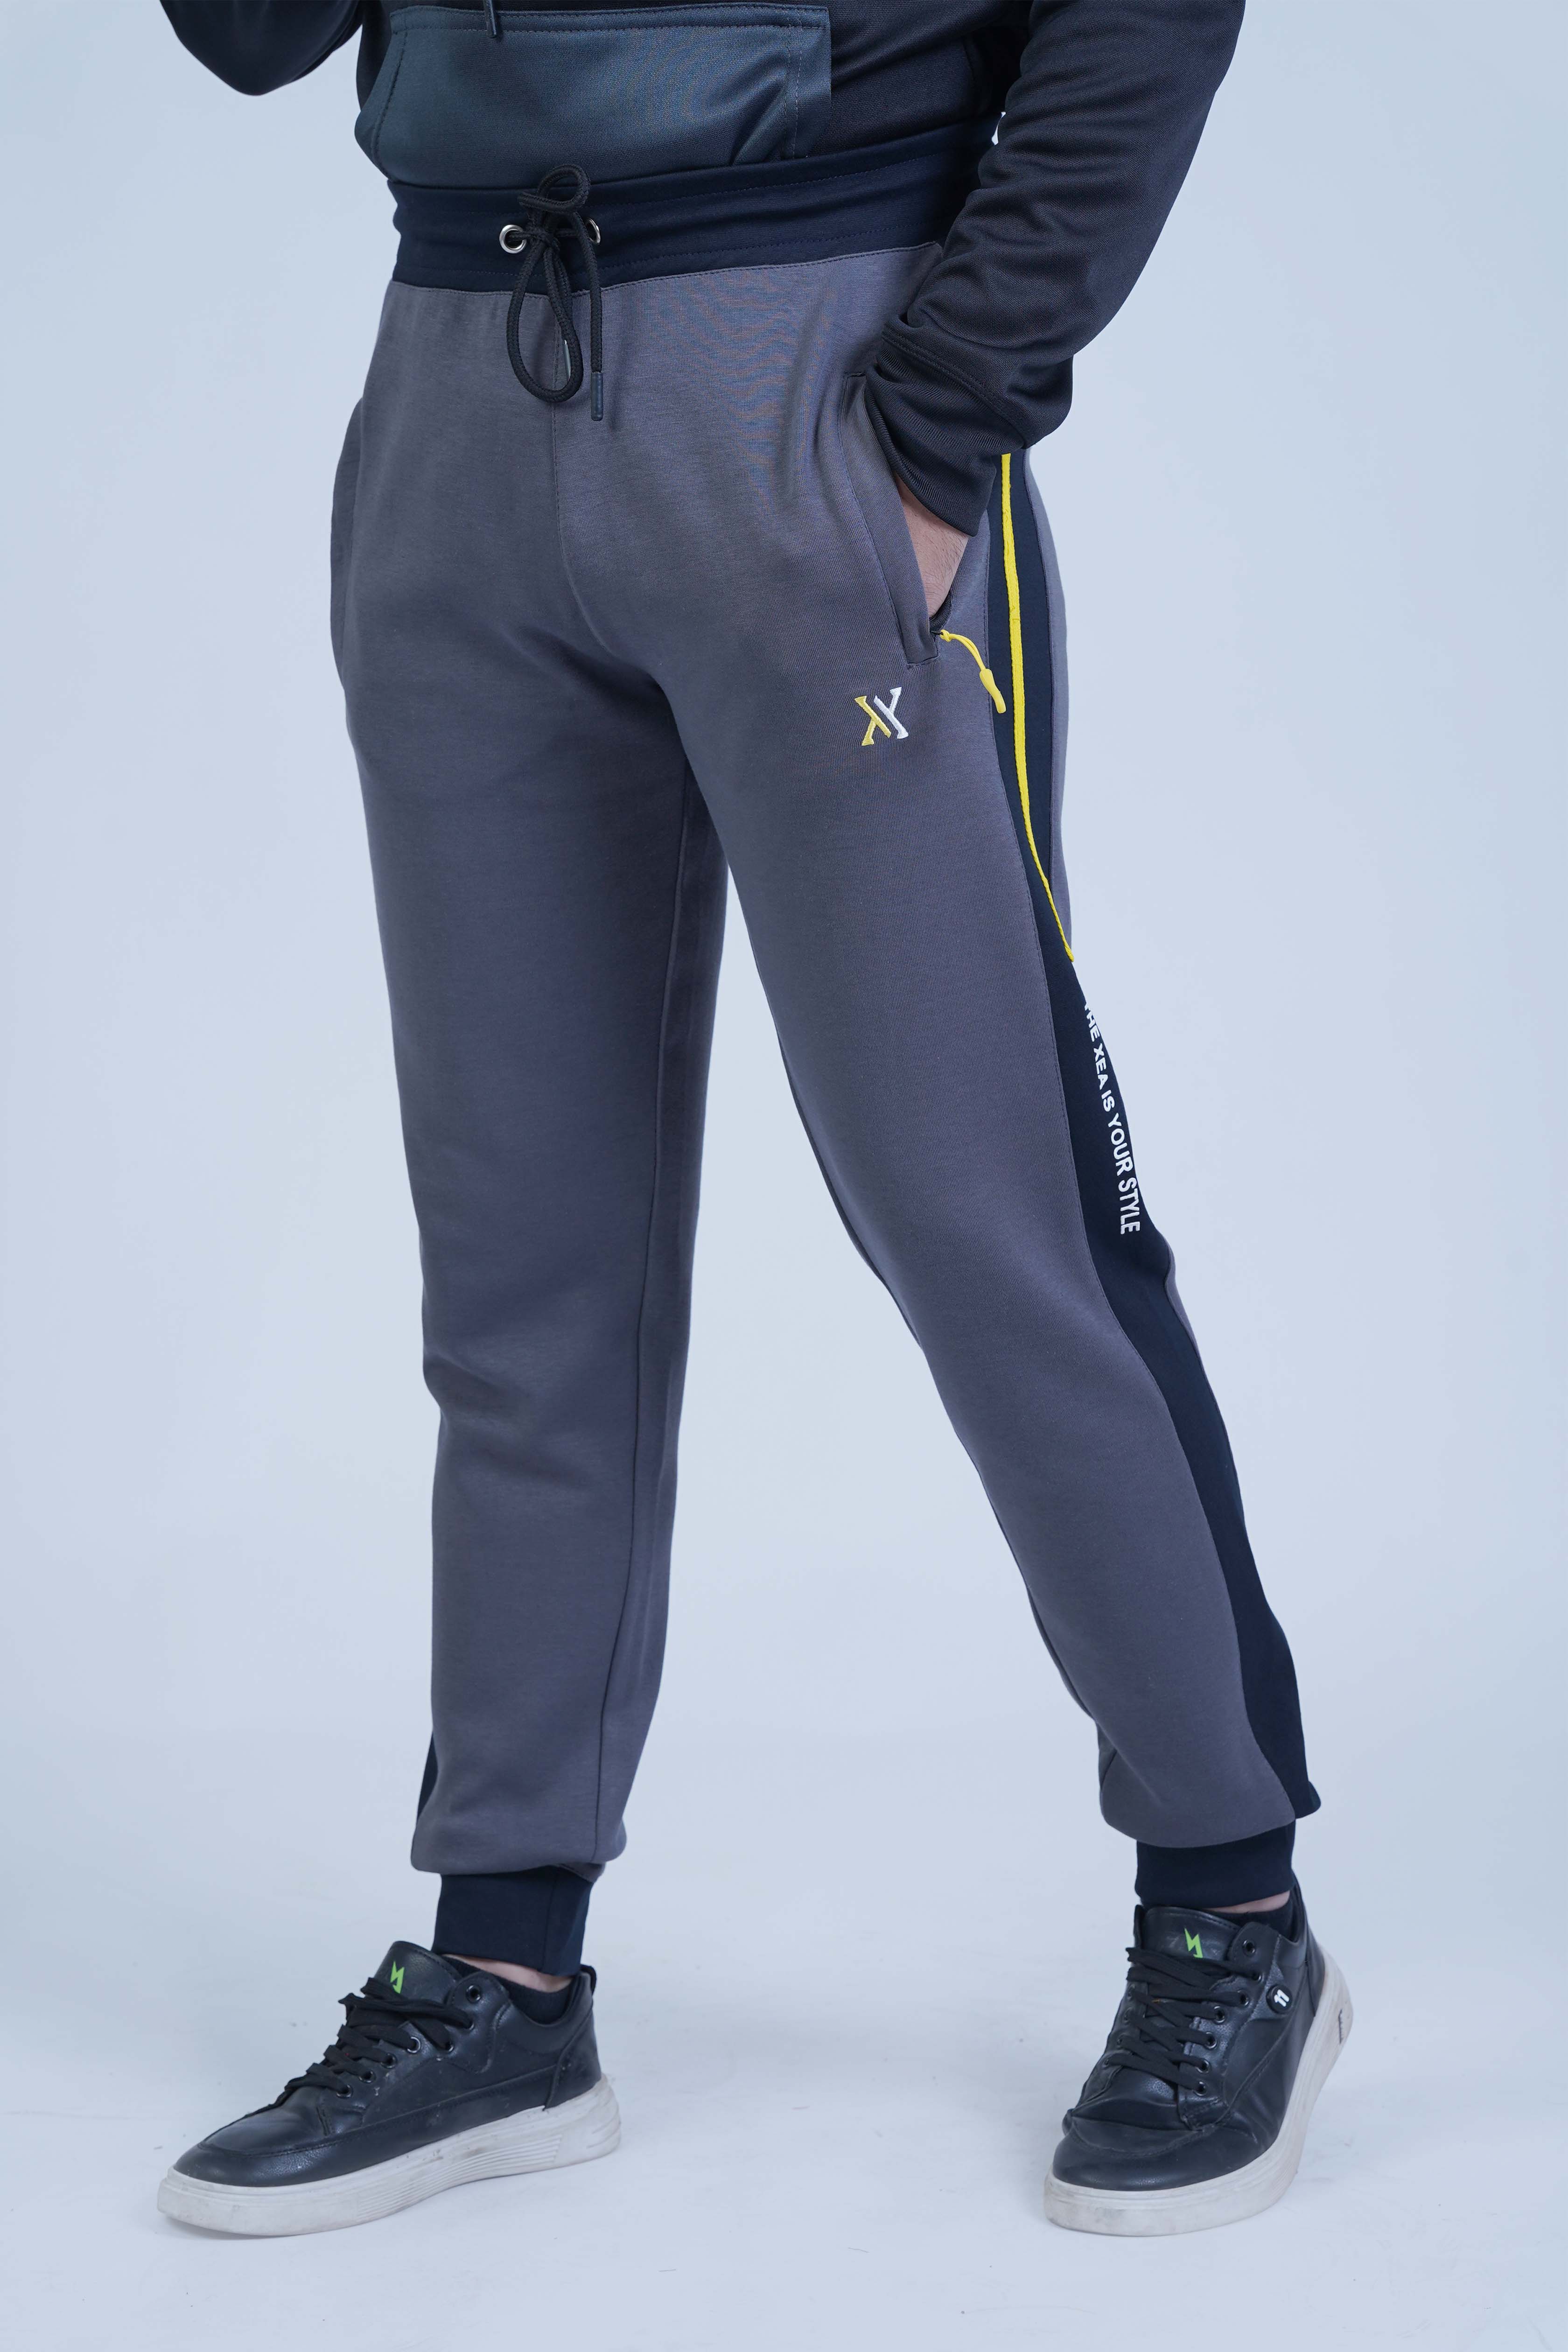 The Xea Men's Uni Pro Smoke Grey Trouser